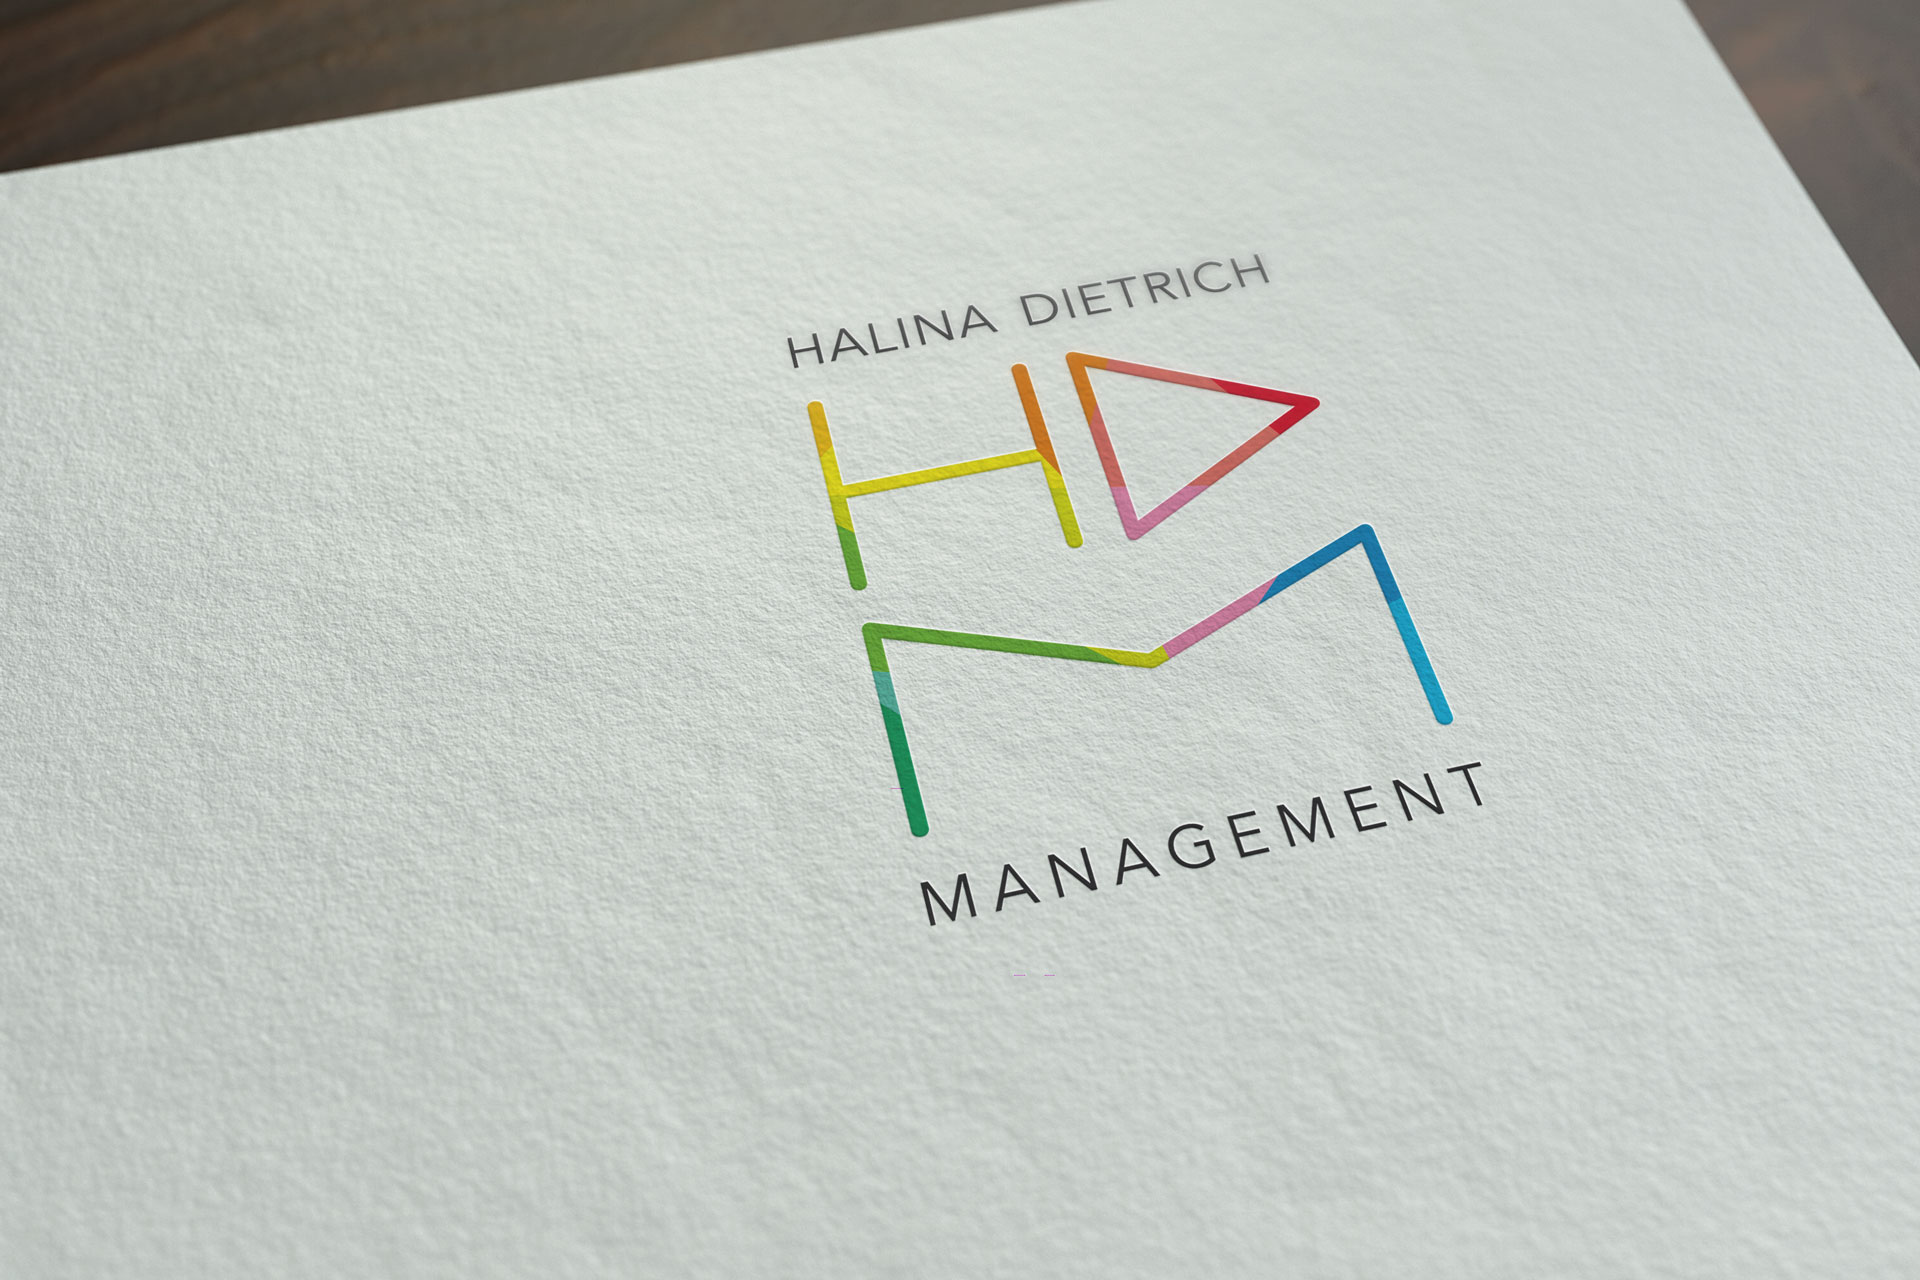 Halina Dietrich Management Logoentwicklung